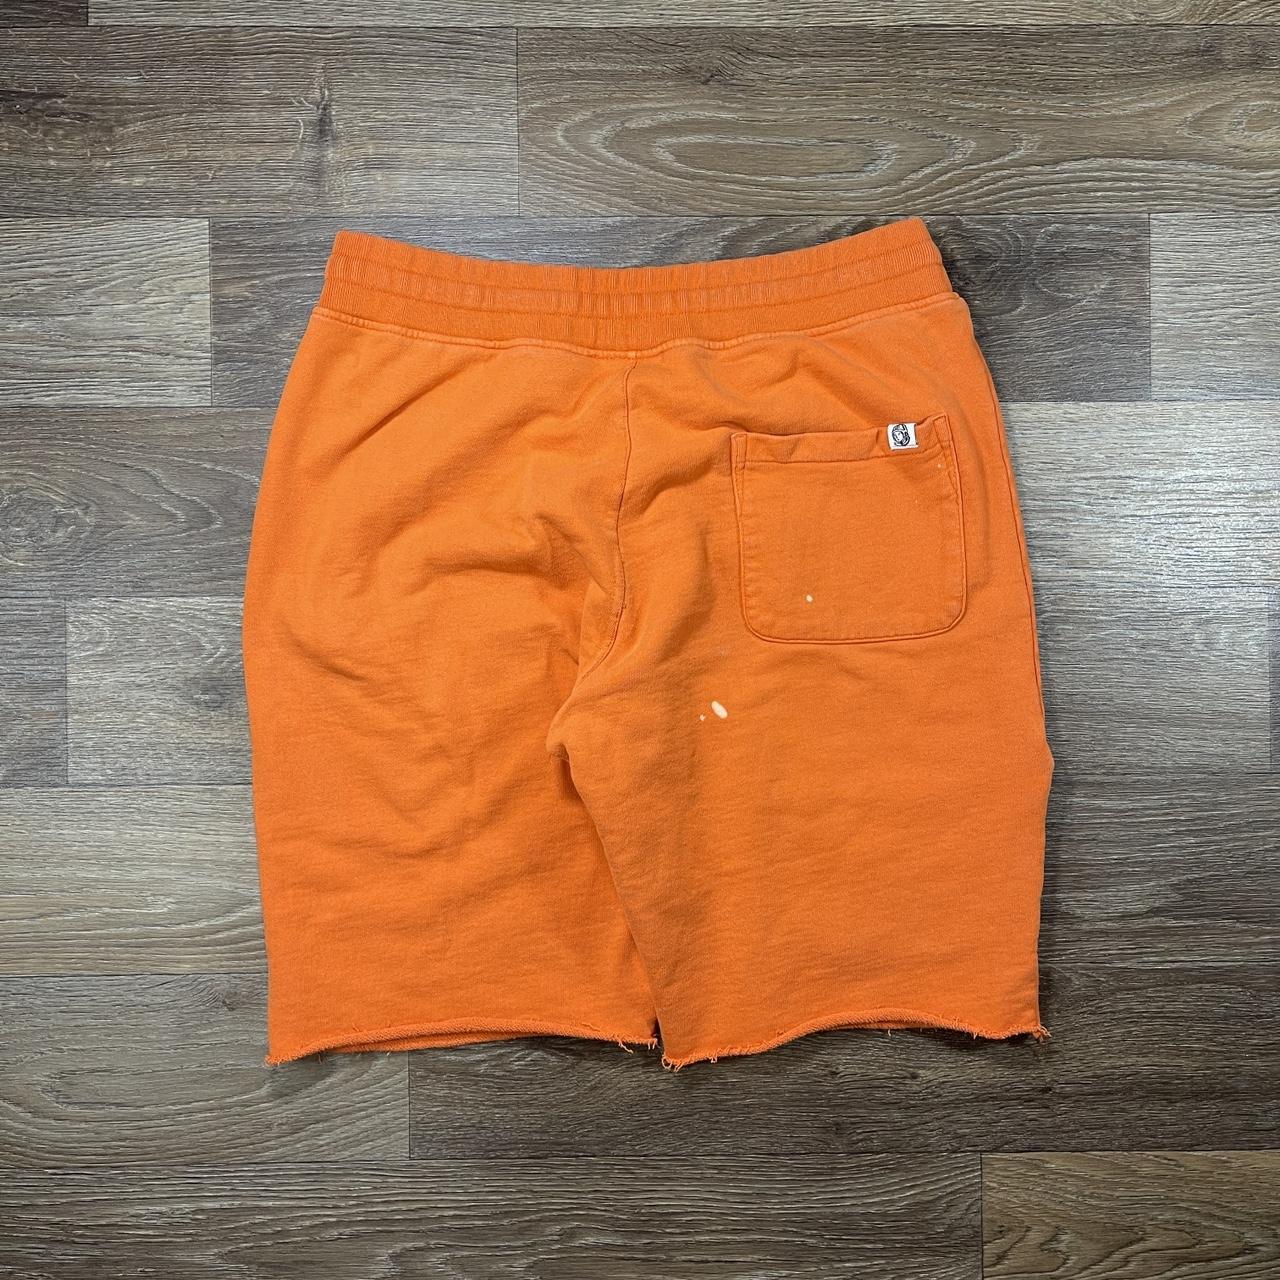 Billionaire Boys Club Men's Orange and White Shorts (4)